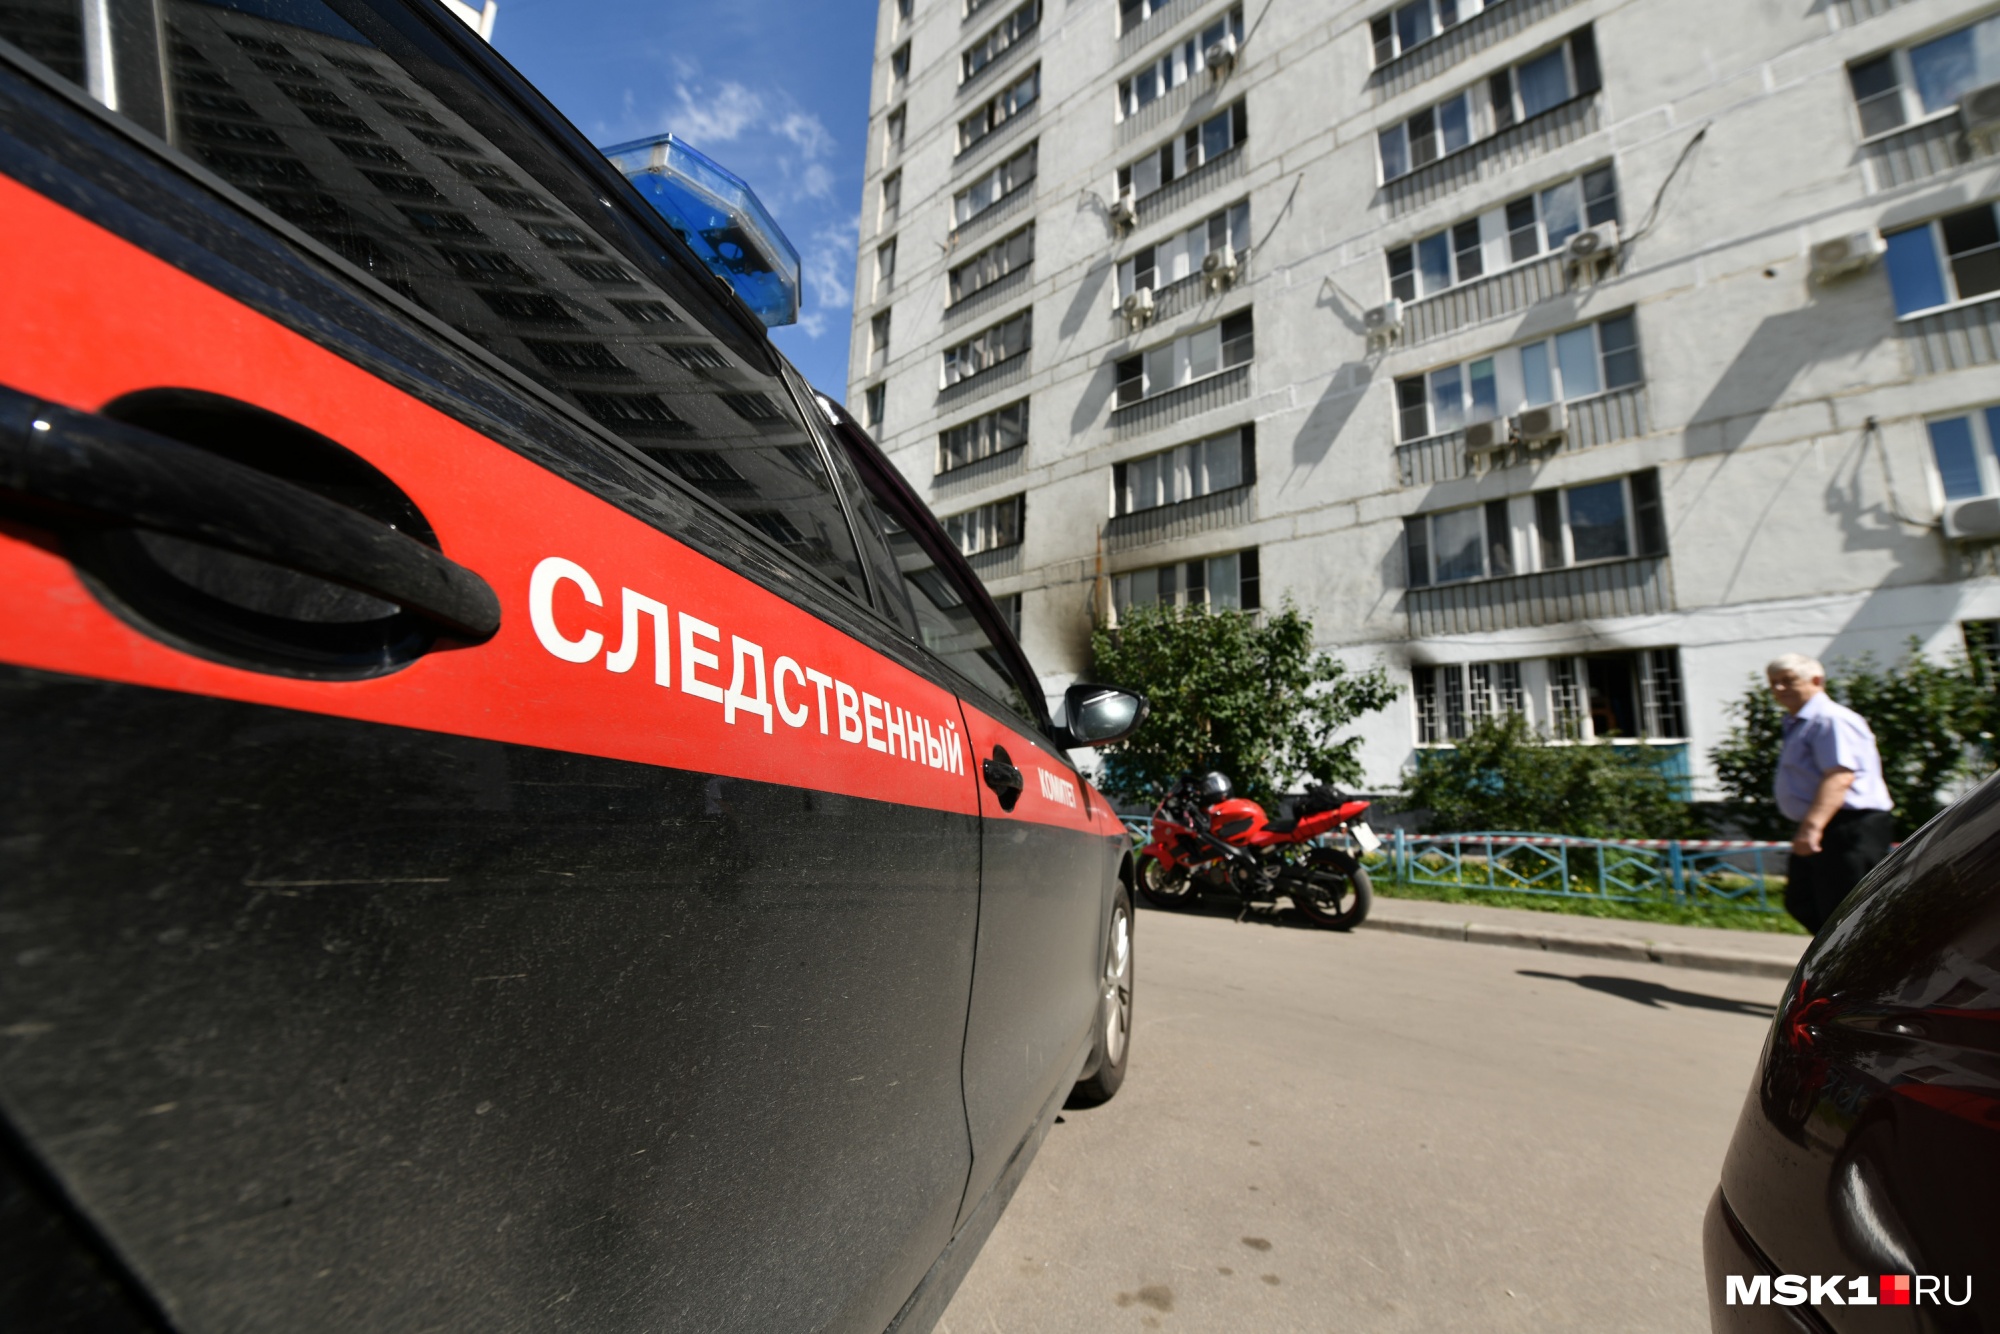 СКР начал проверку семьи девочки, которую сняли с балкона в Иркутске